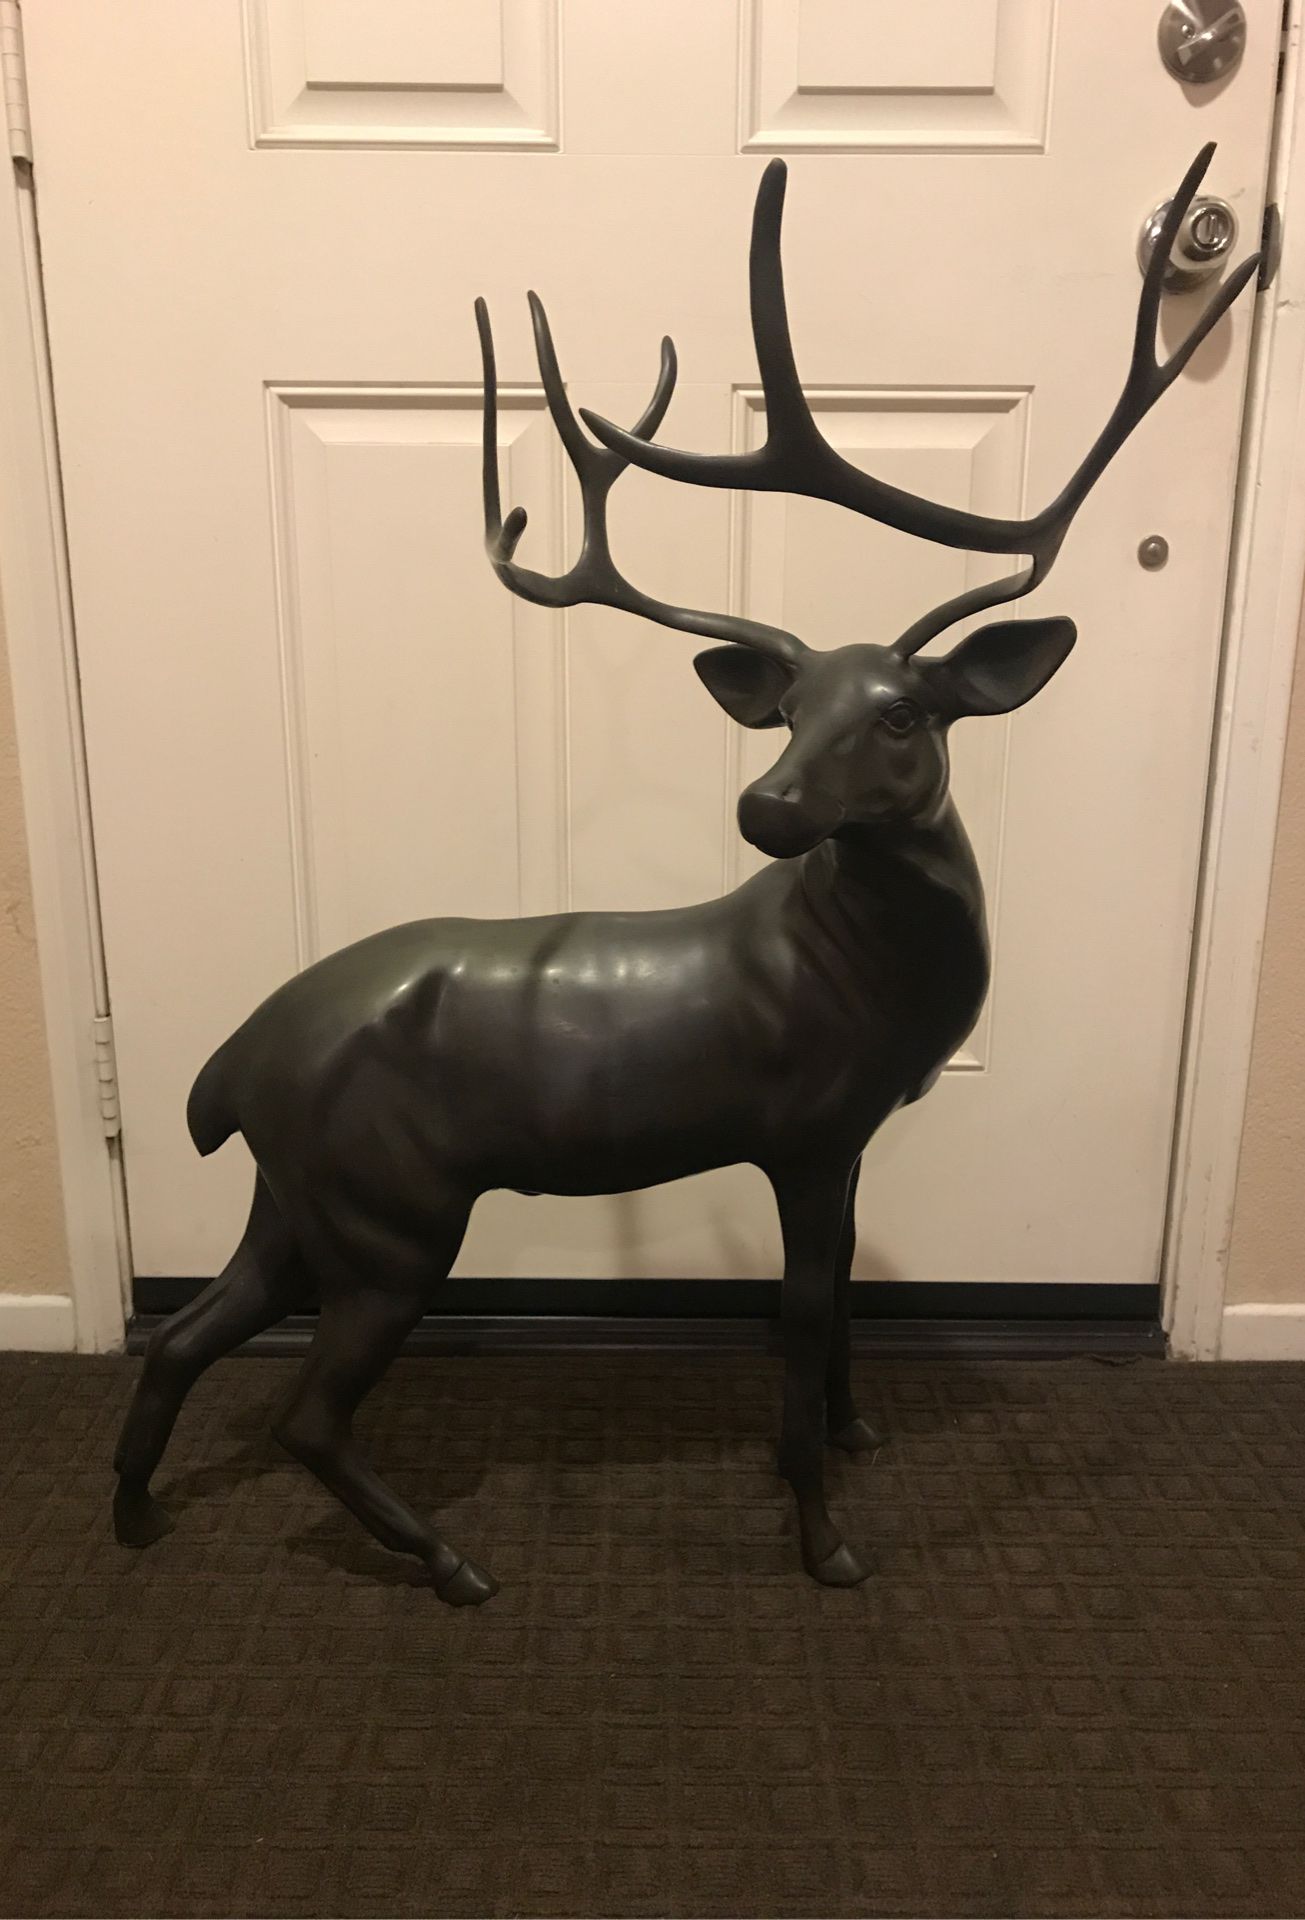 Large brass or bronze metal deer statue